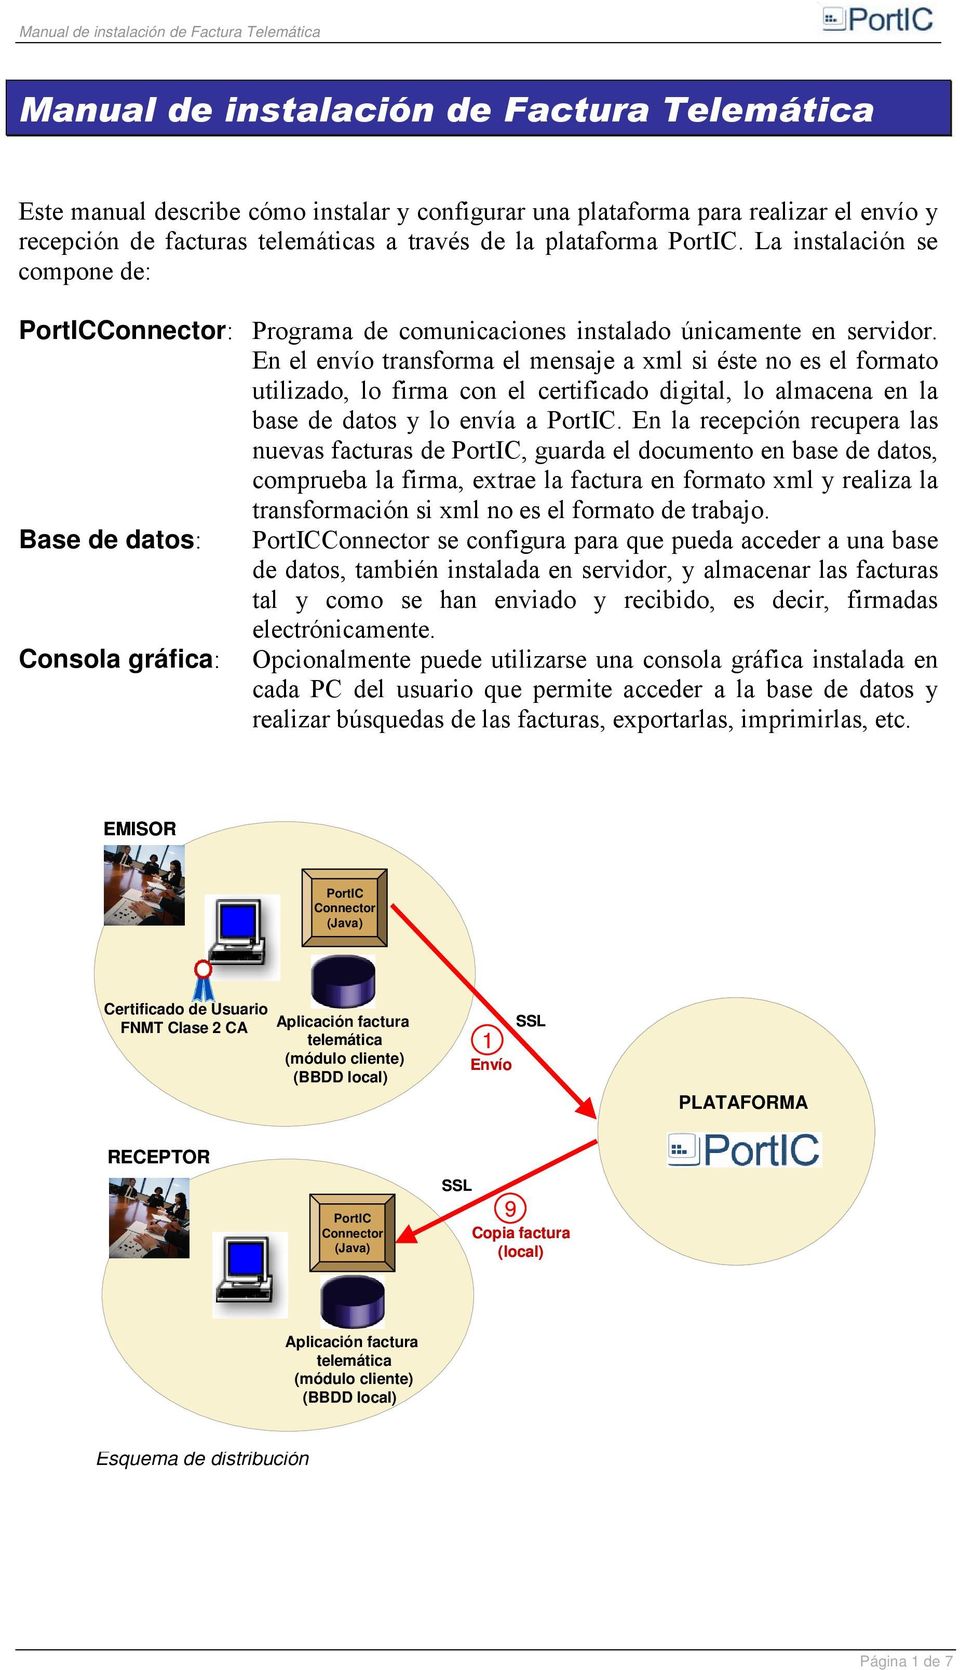 $#$$ PortIC Connector (Java) Certificado de Usuario FNMT Clase 2 CA Aplicación factura telemática